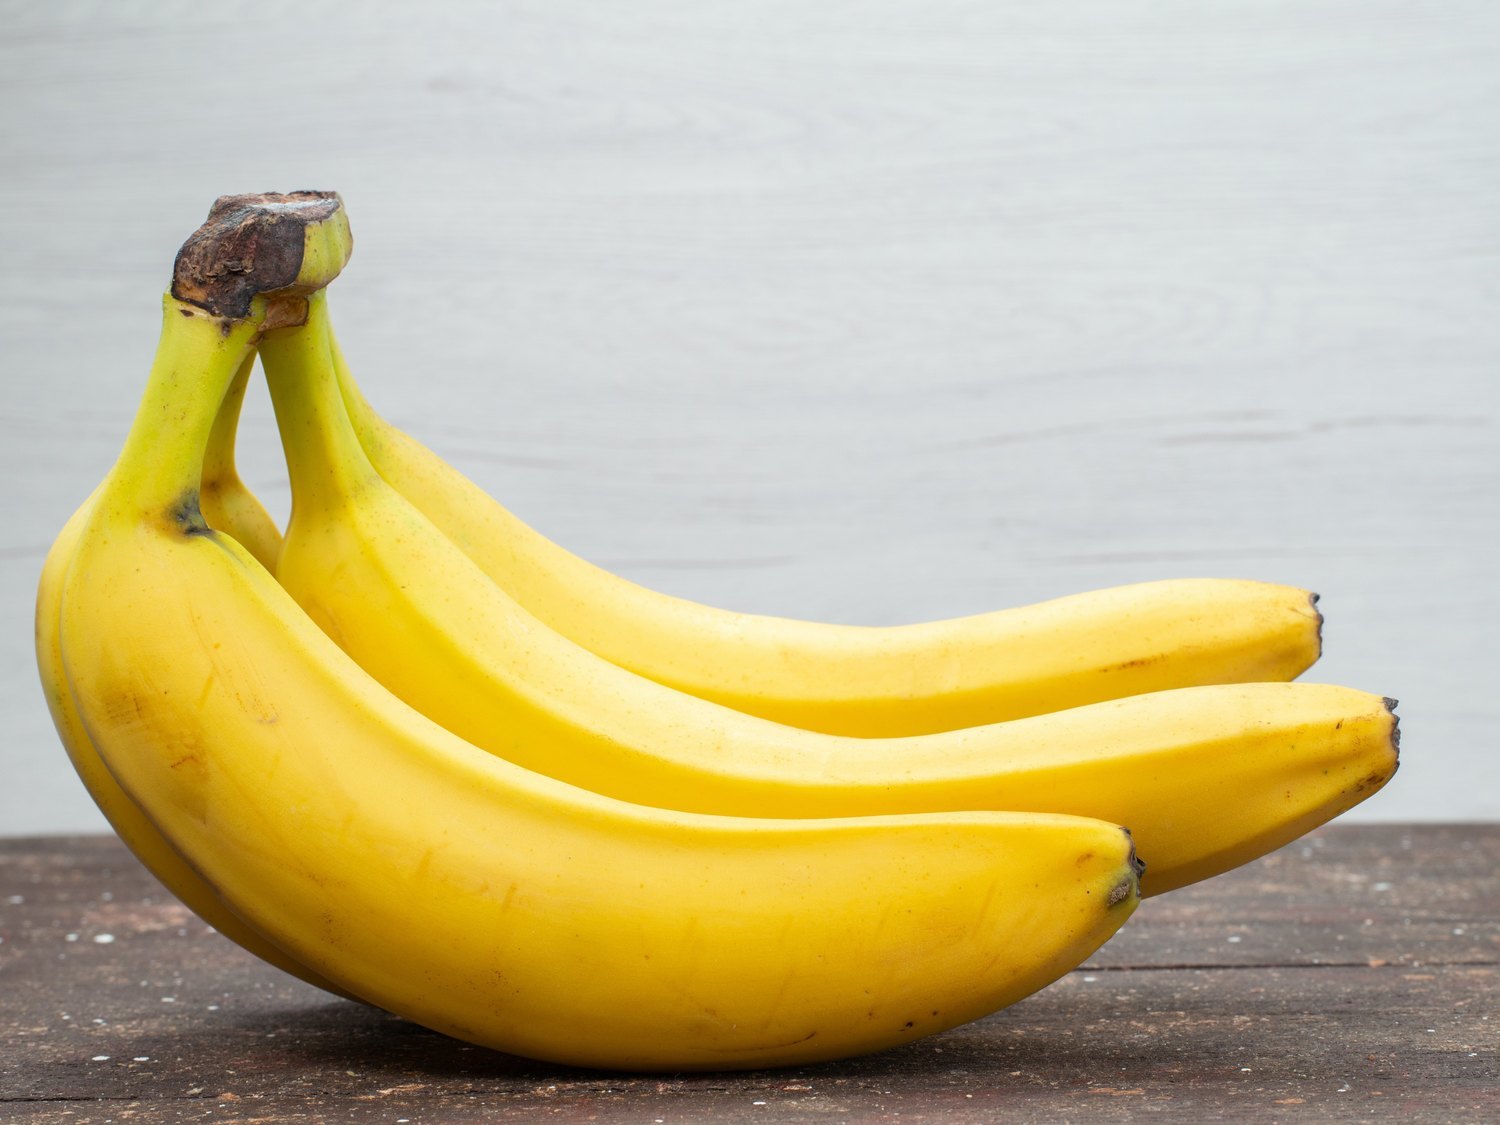 Todo lo que sucede en tu organismo por comer un plátano todos los días